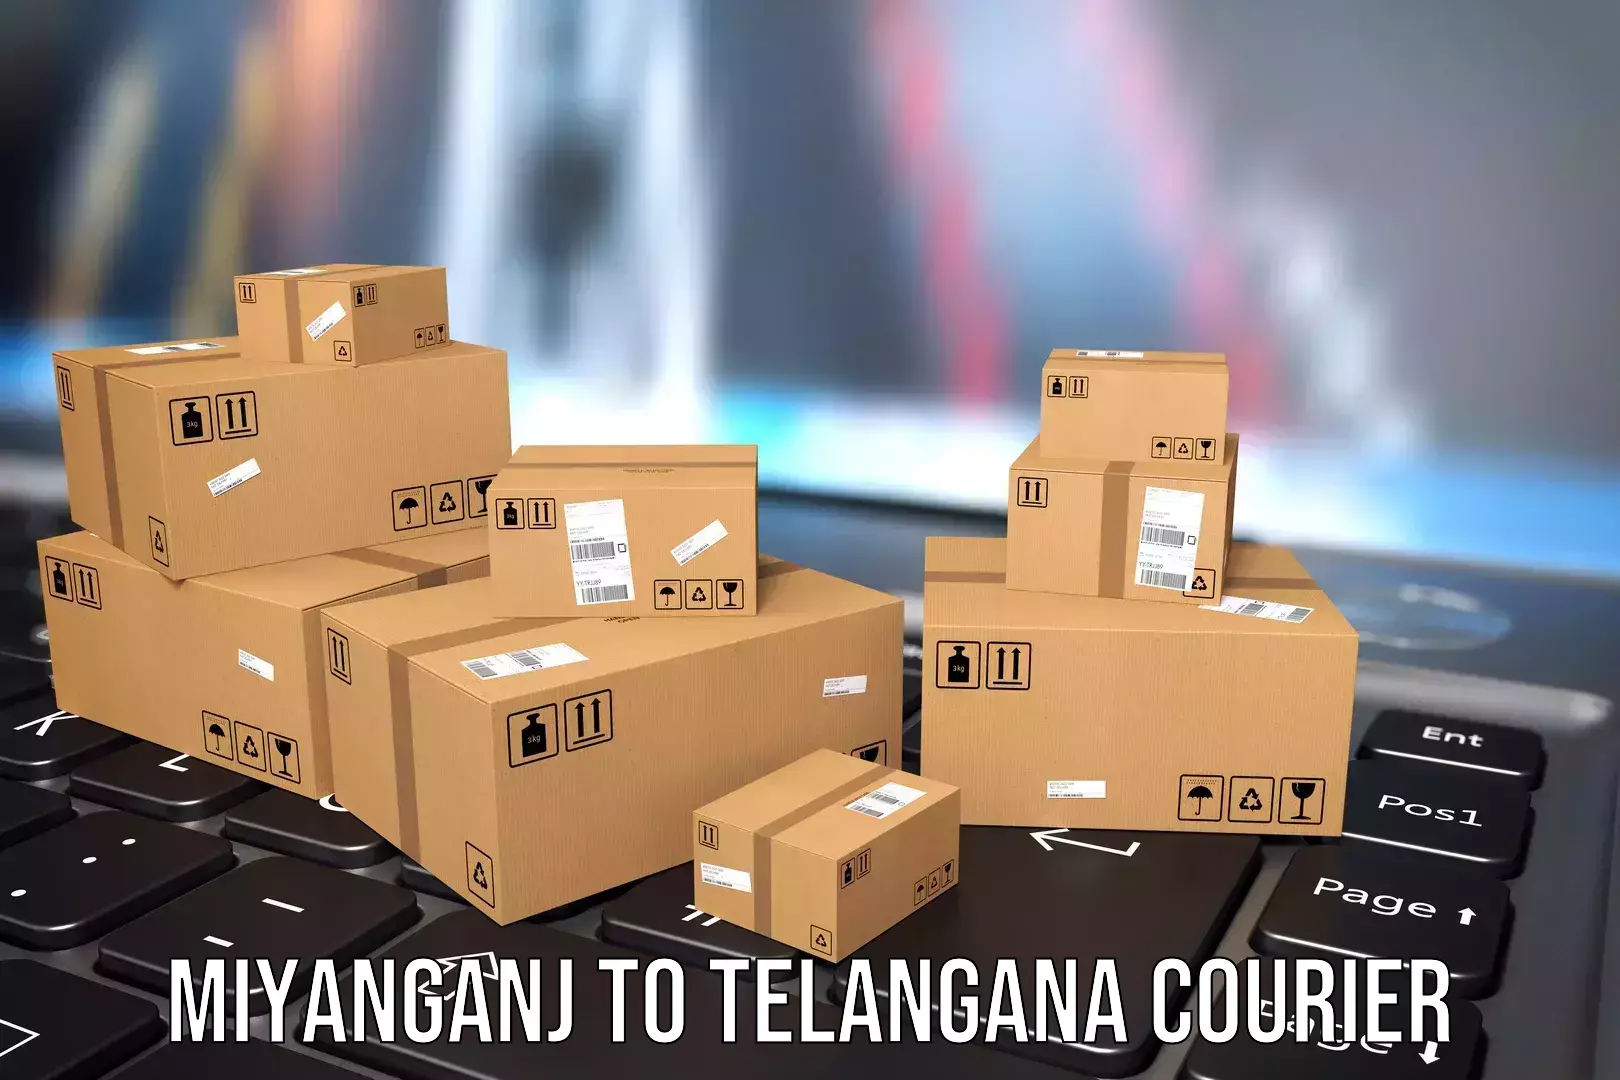 Luggage transport consulting Miyanganj to Bodhan